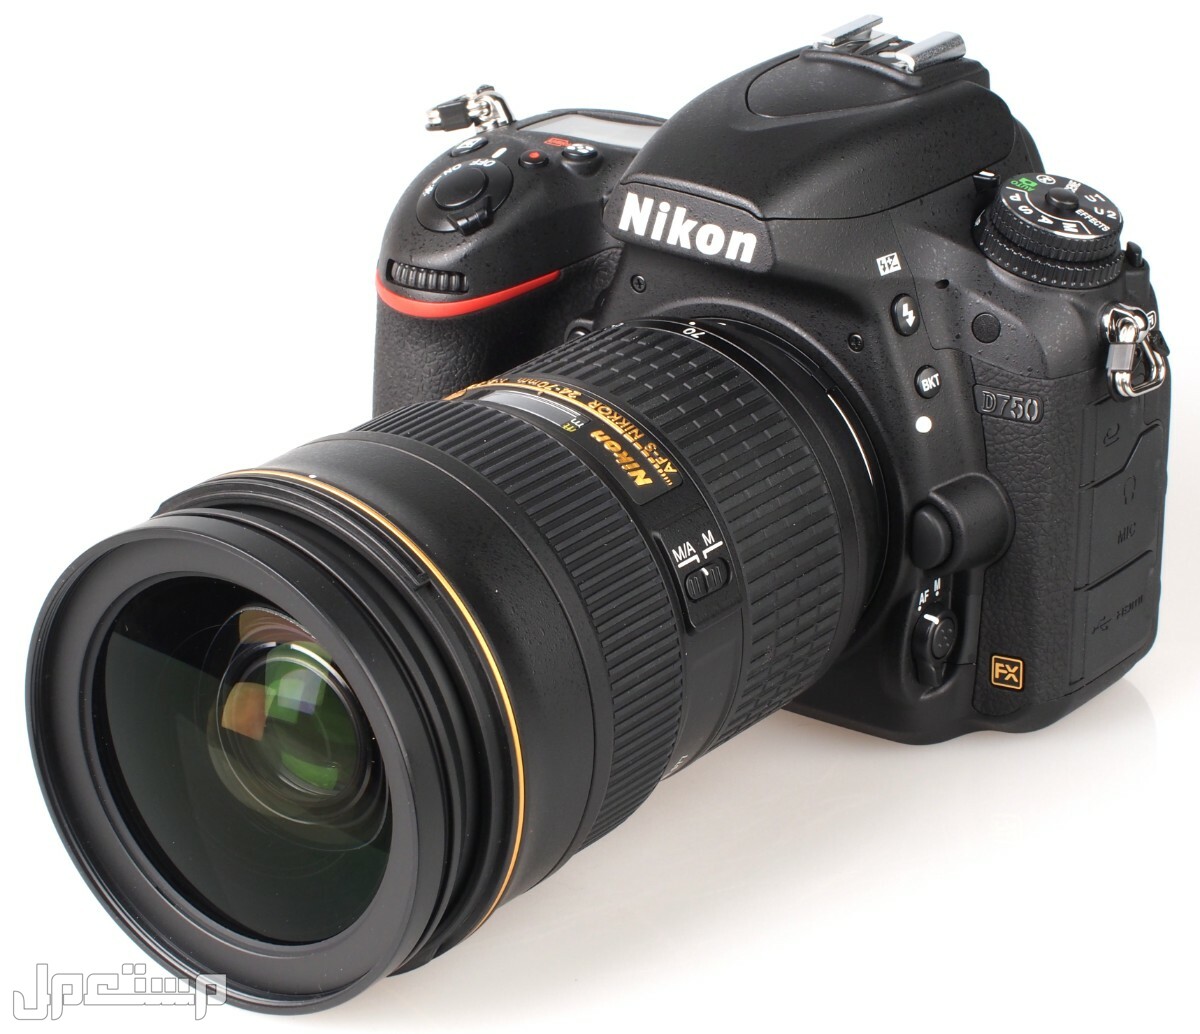 مواصفات ومميزات وأسعار أفضل أنواع كاميرات نيكون للمحترفين في عمان كاميرا Nikon D750